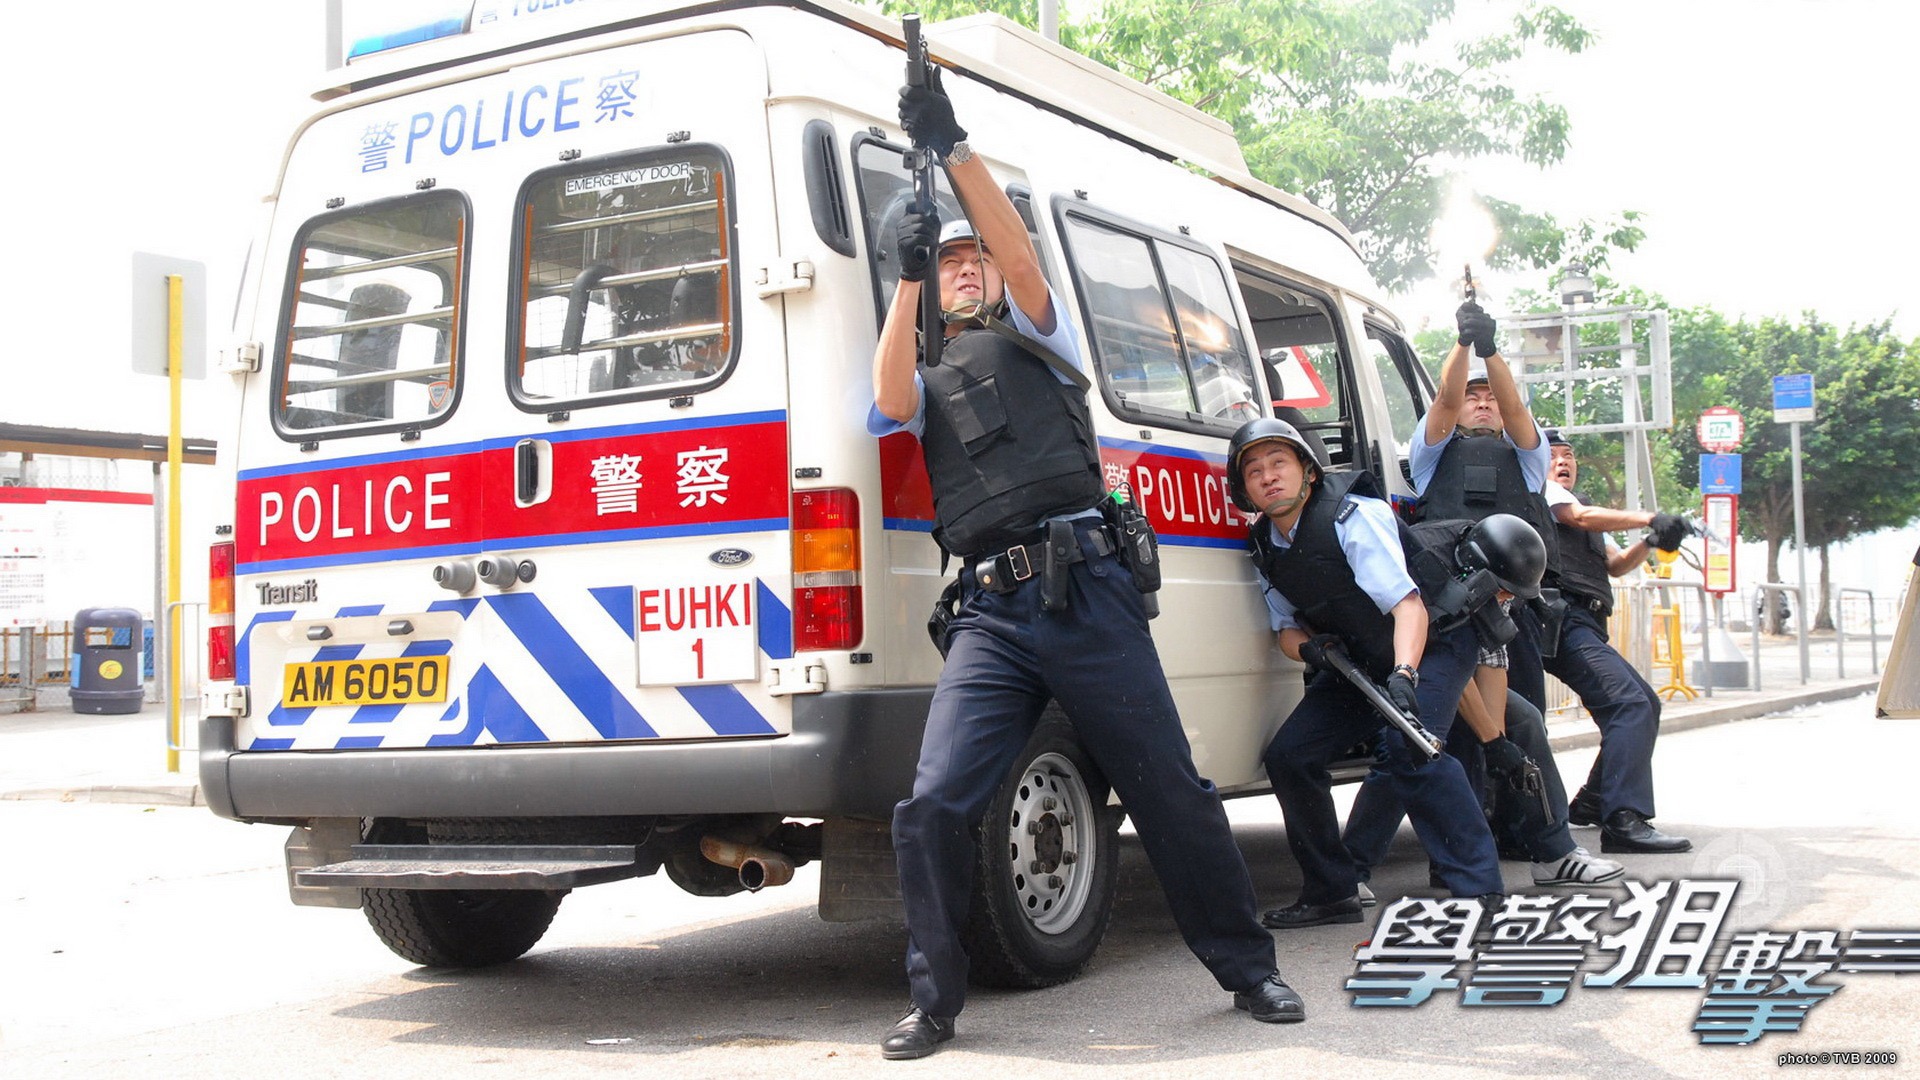 Populární TVB drama škola Police Sniper #2 - 1920x1080